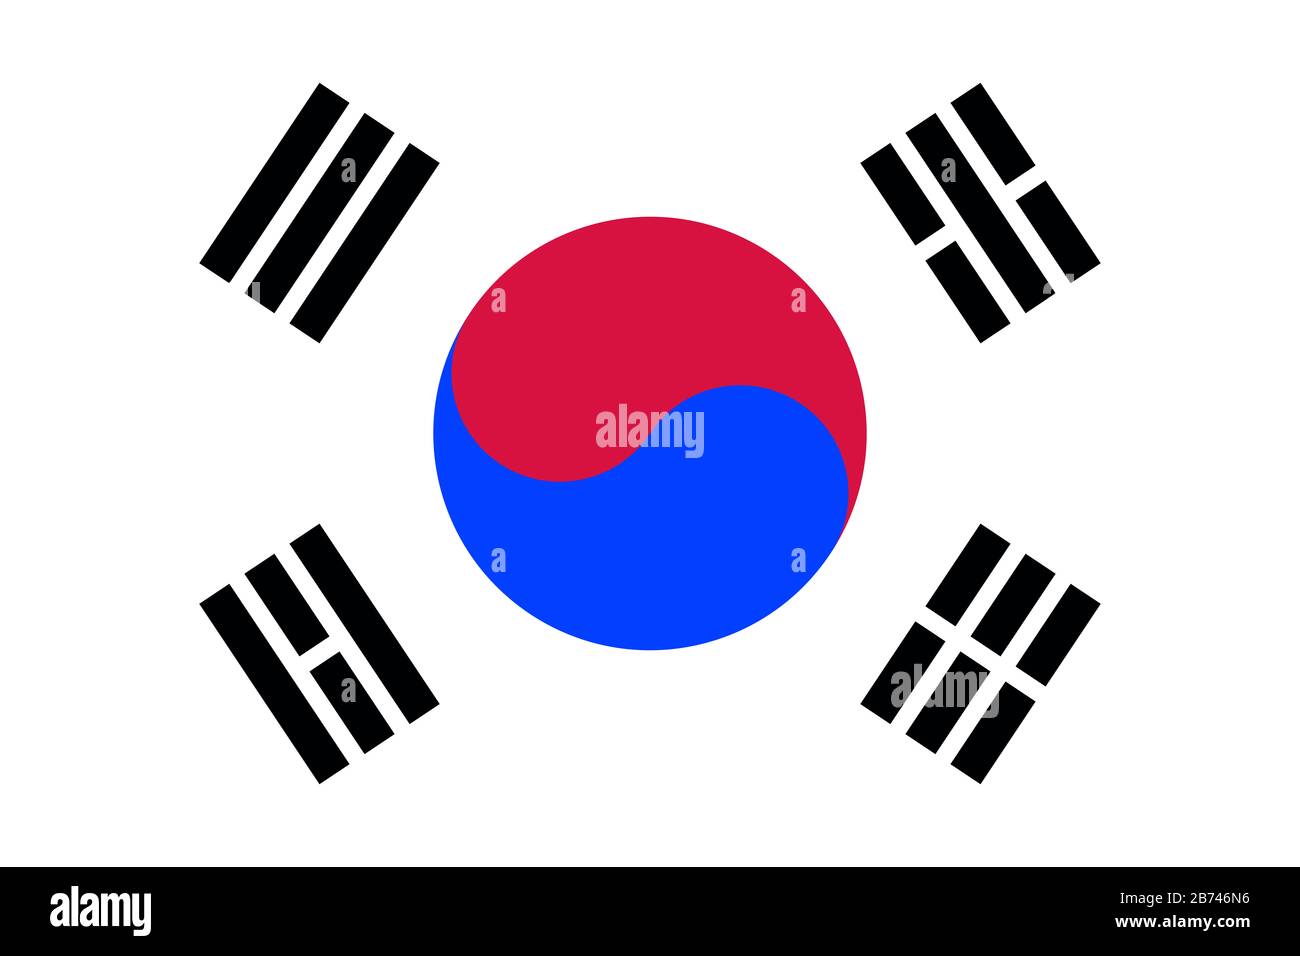 Bandera de Corea del Sur - relación estándar de bandera coreana - modo de color RGB verdadero Foto de stock